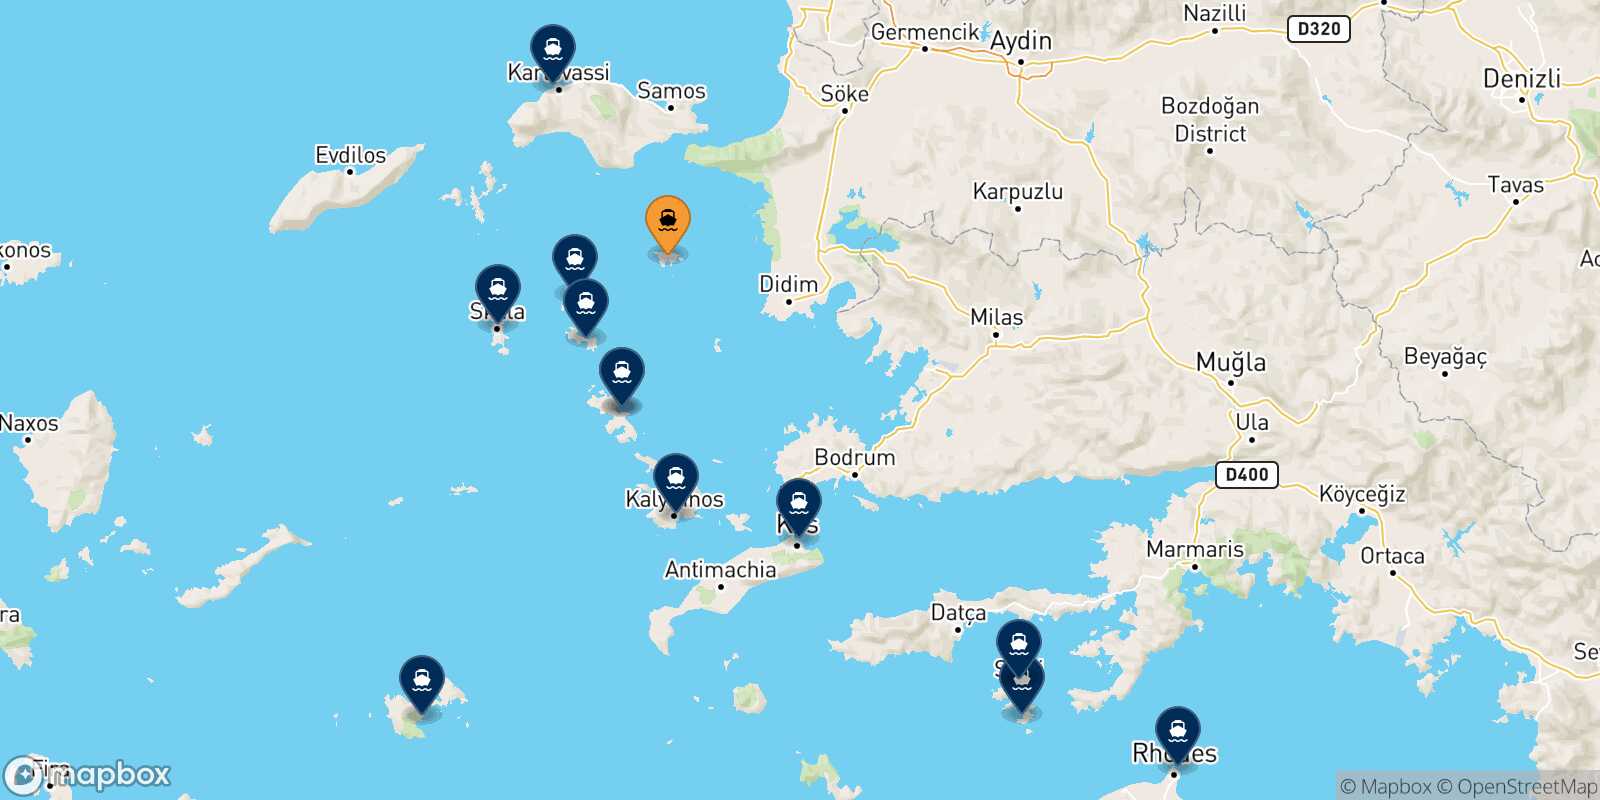 Mappa delle destinazioni raggiungibili da Agathonisi